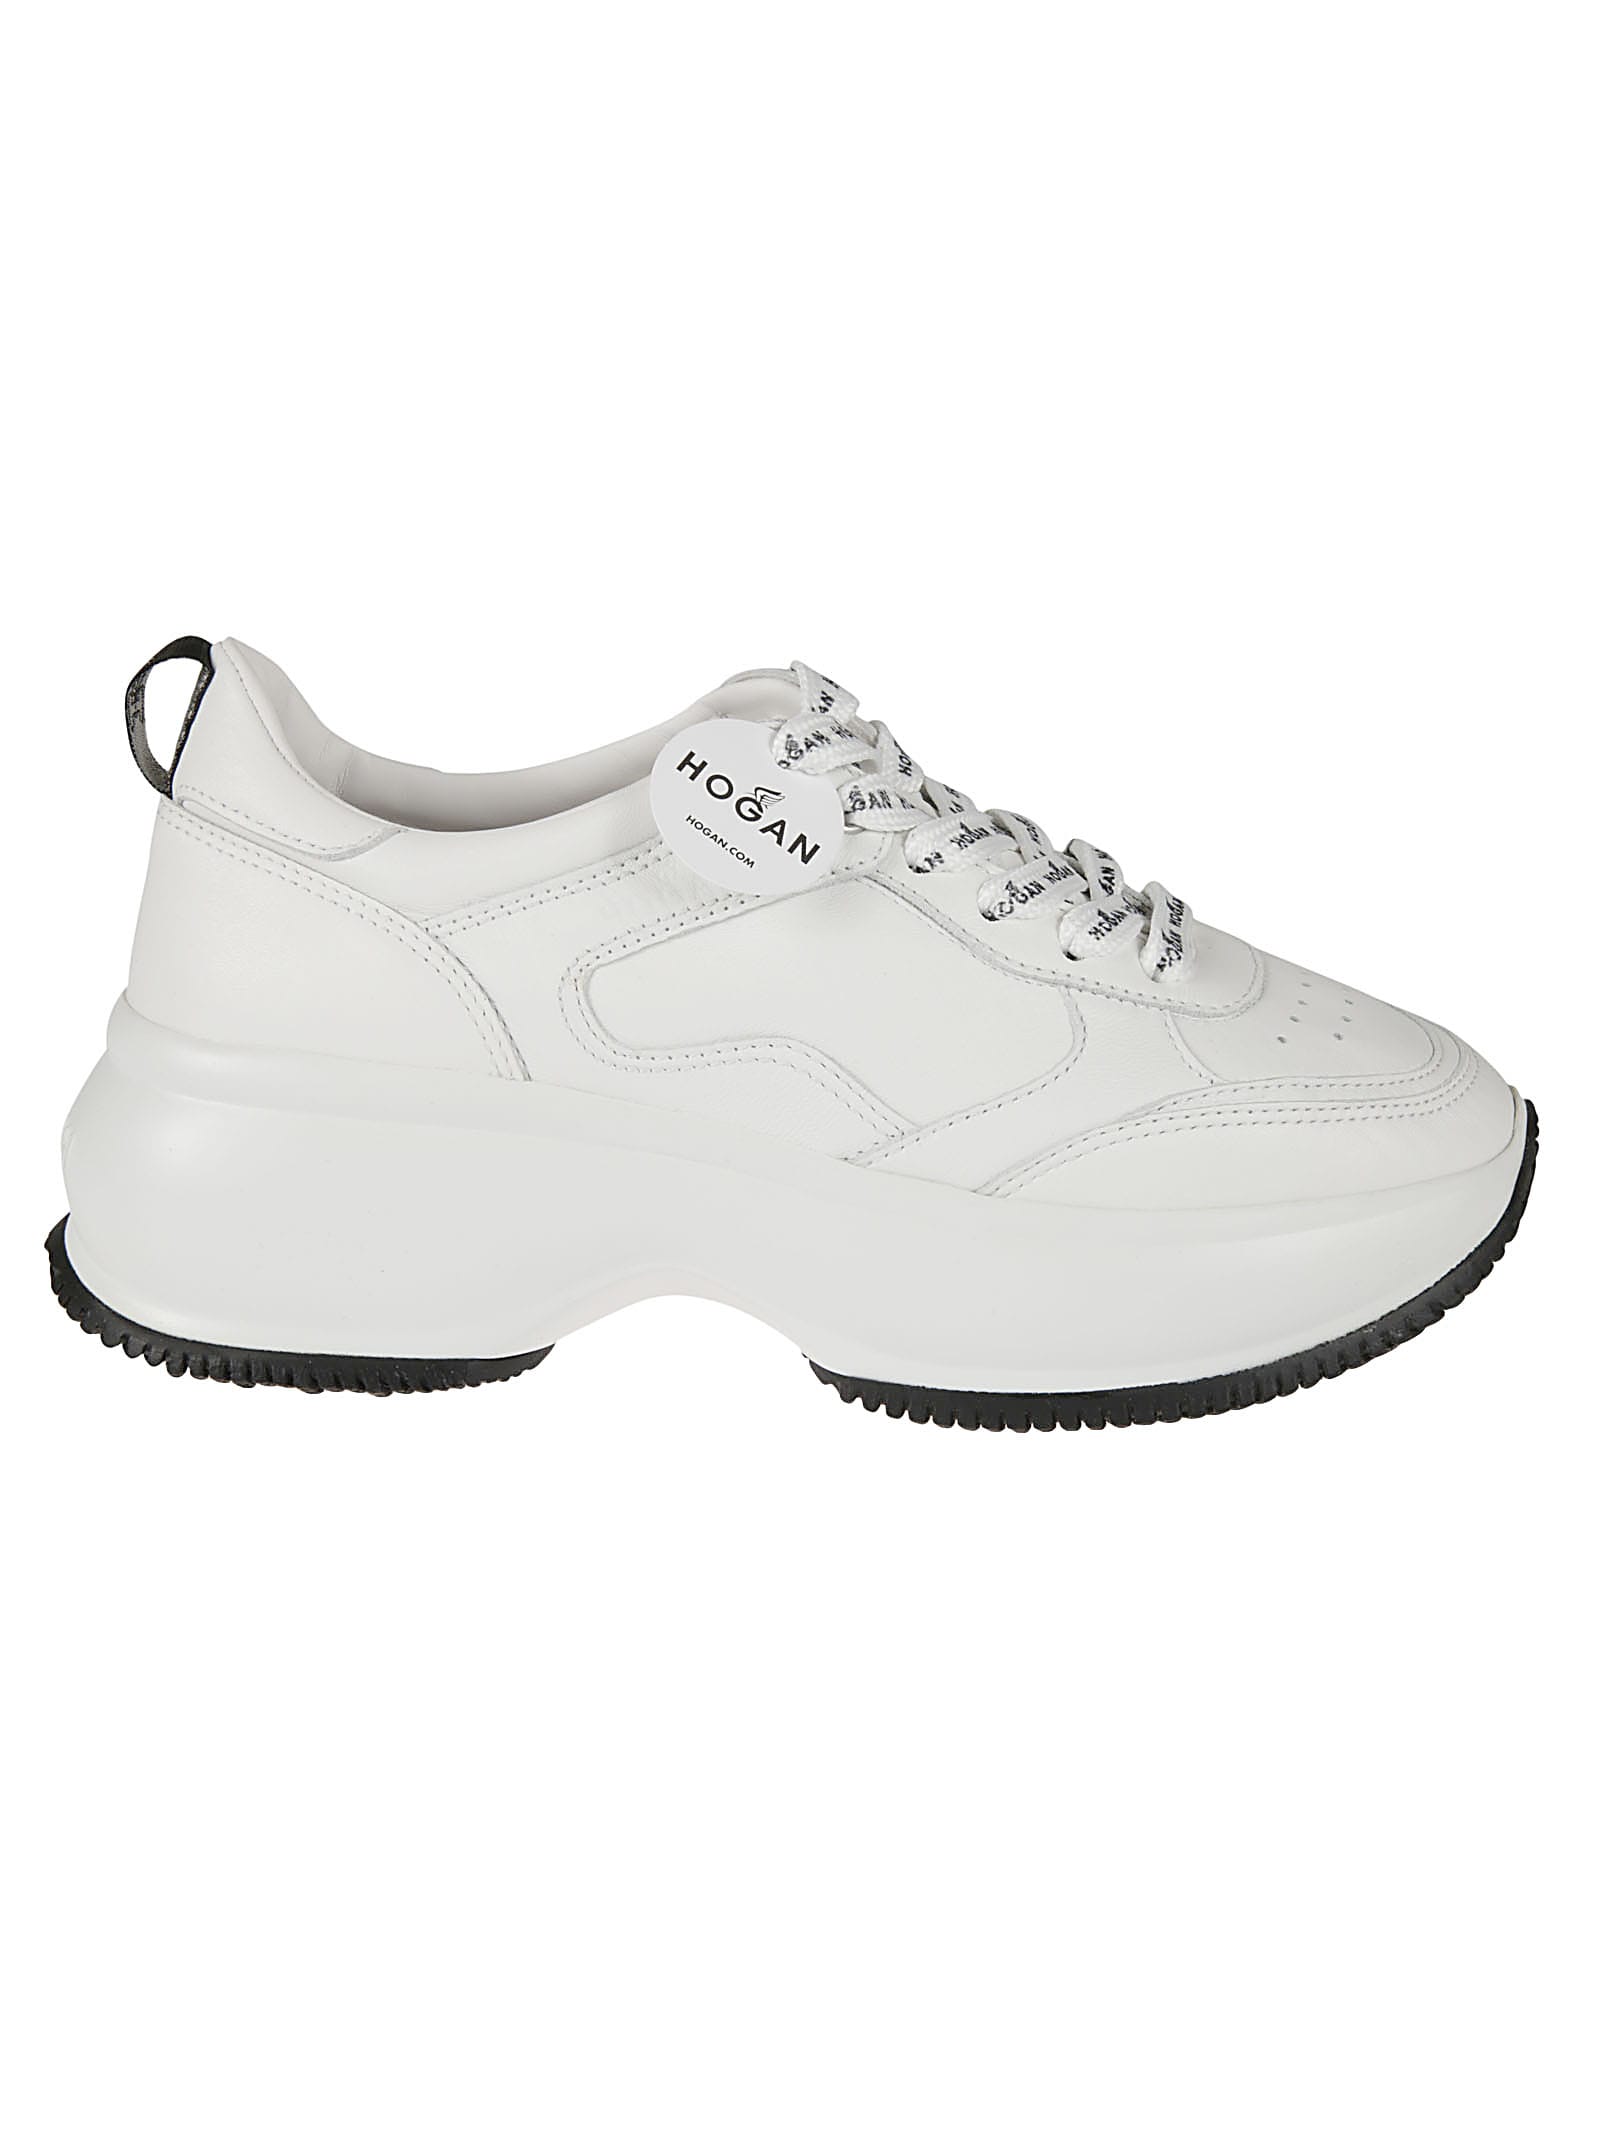 Hogan Maxi 1 Active Sneakers